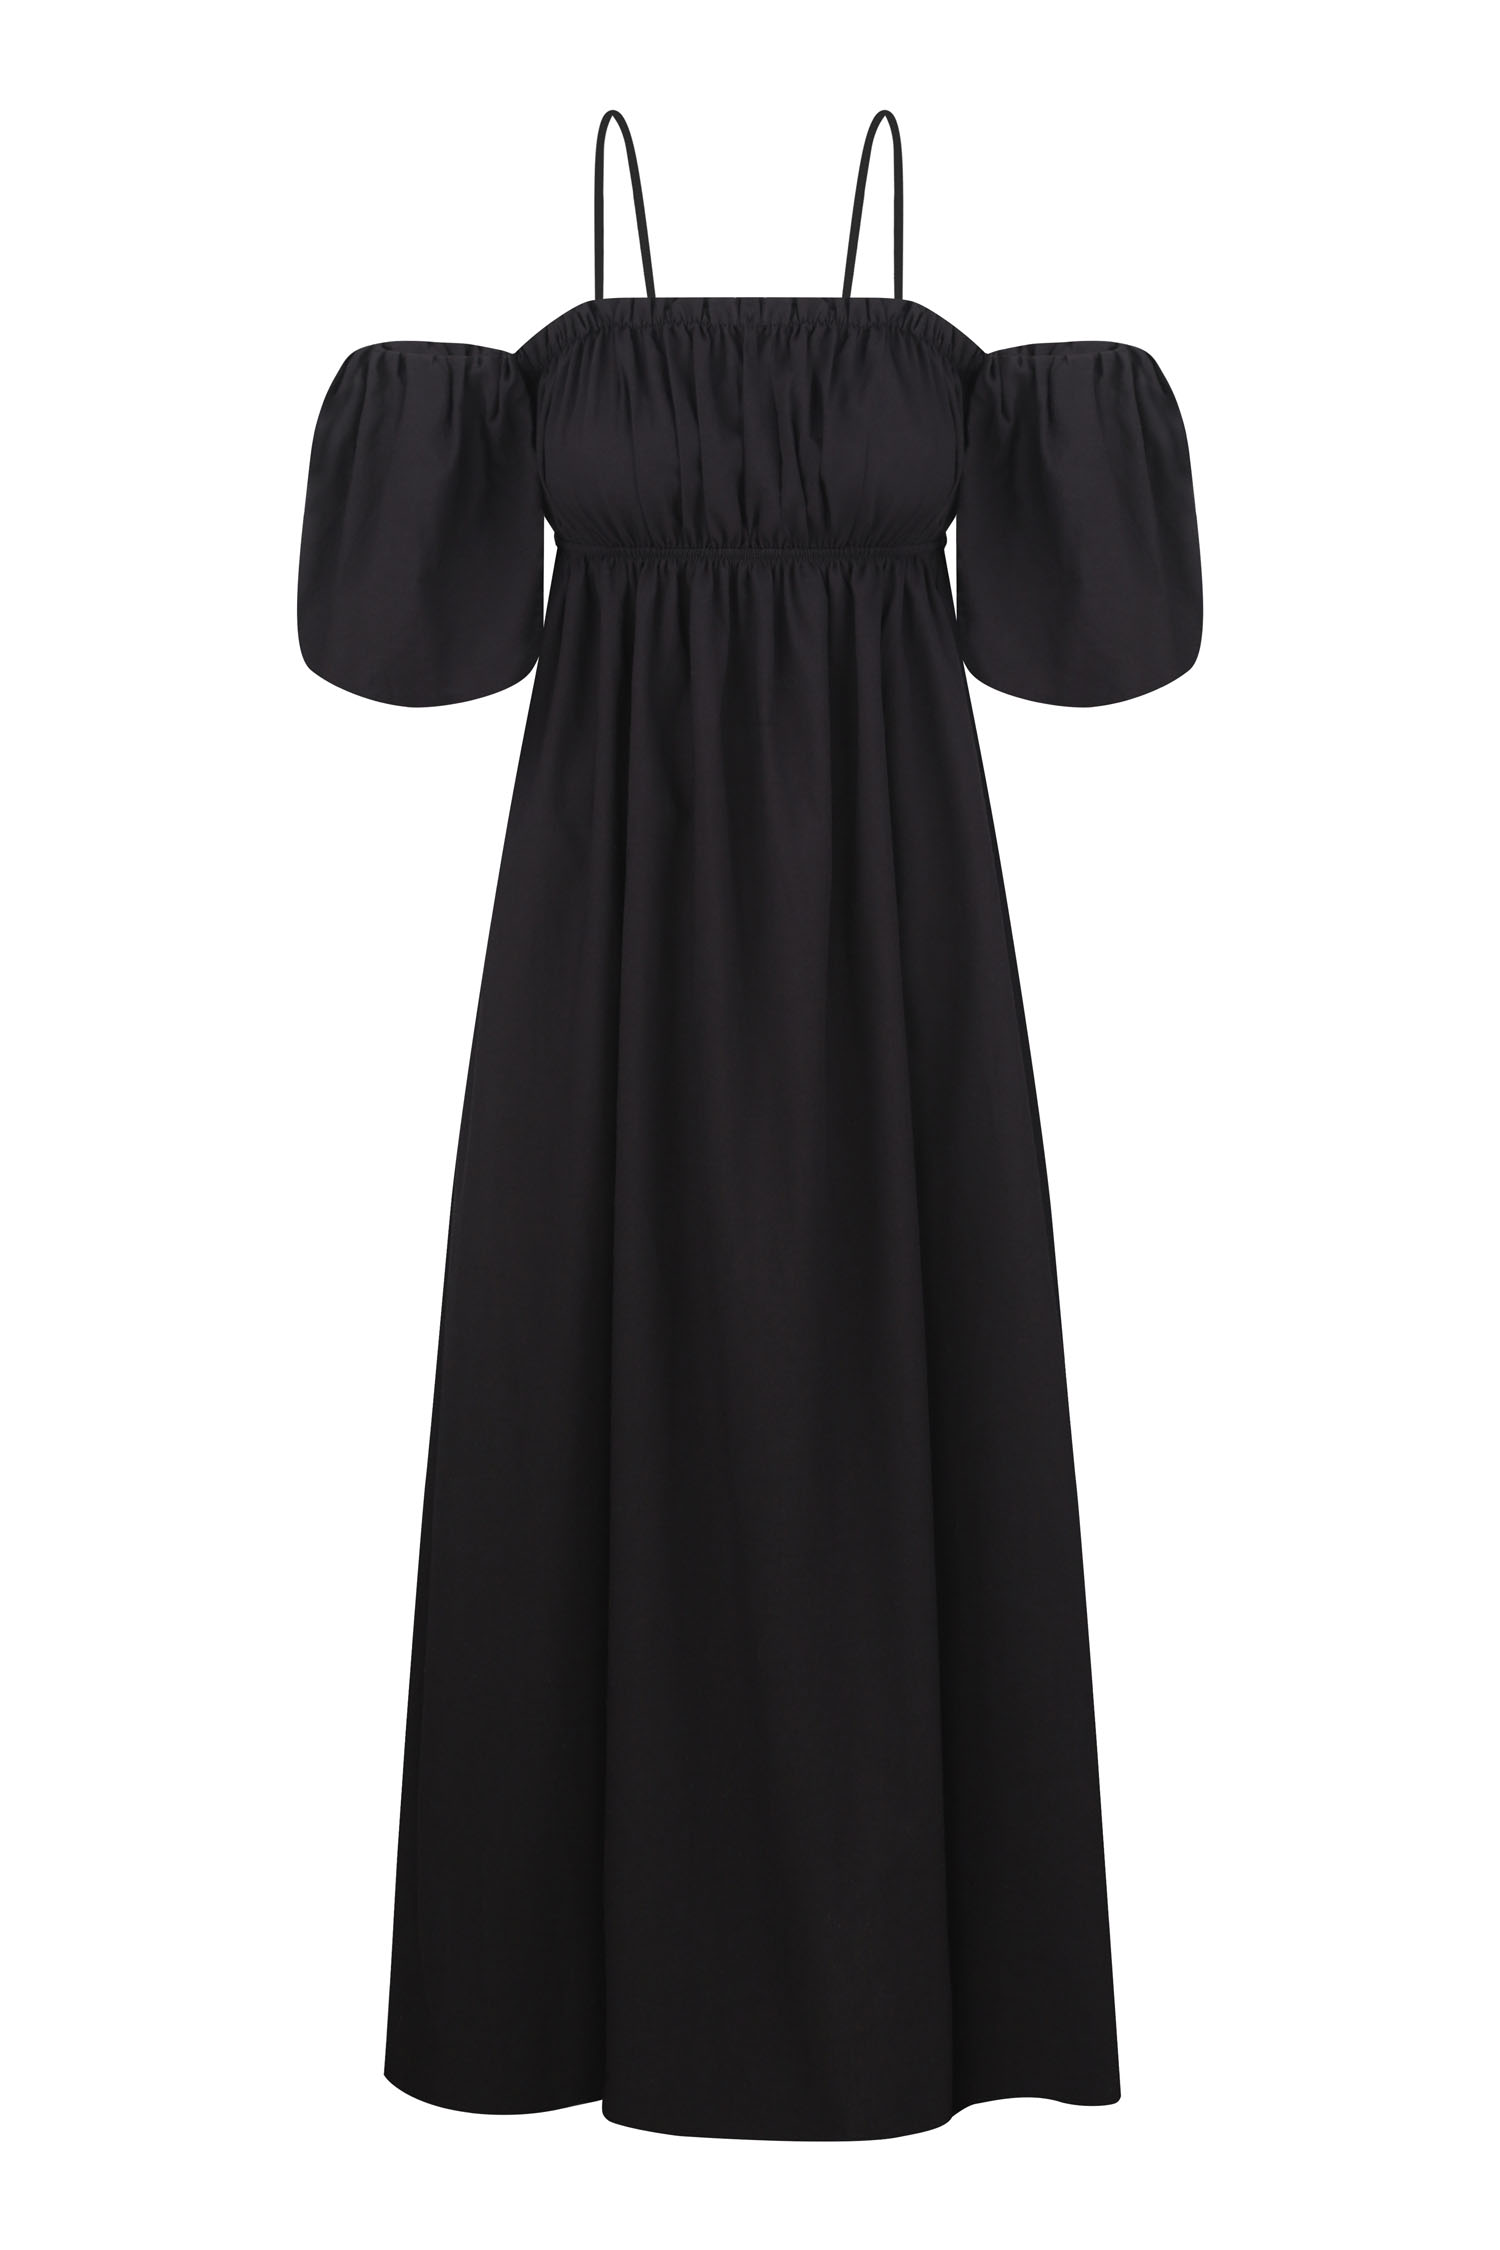 Сукня міді зі спущеними плечима чорна (eco) - THE LACE фото 158866